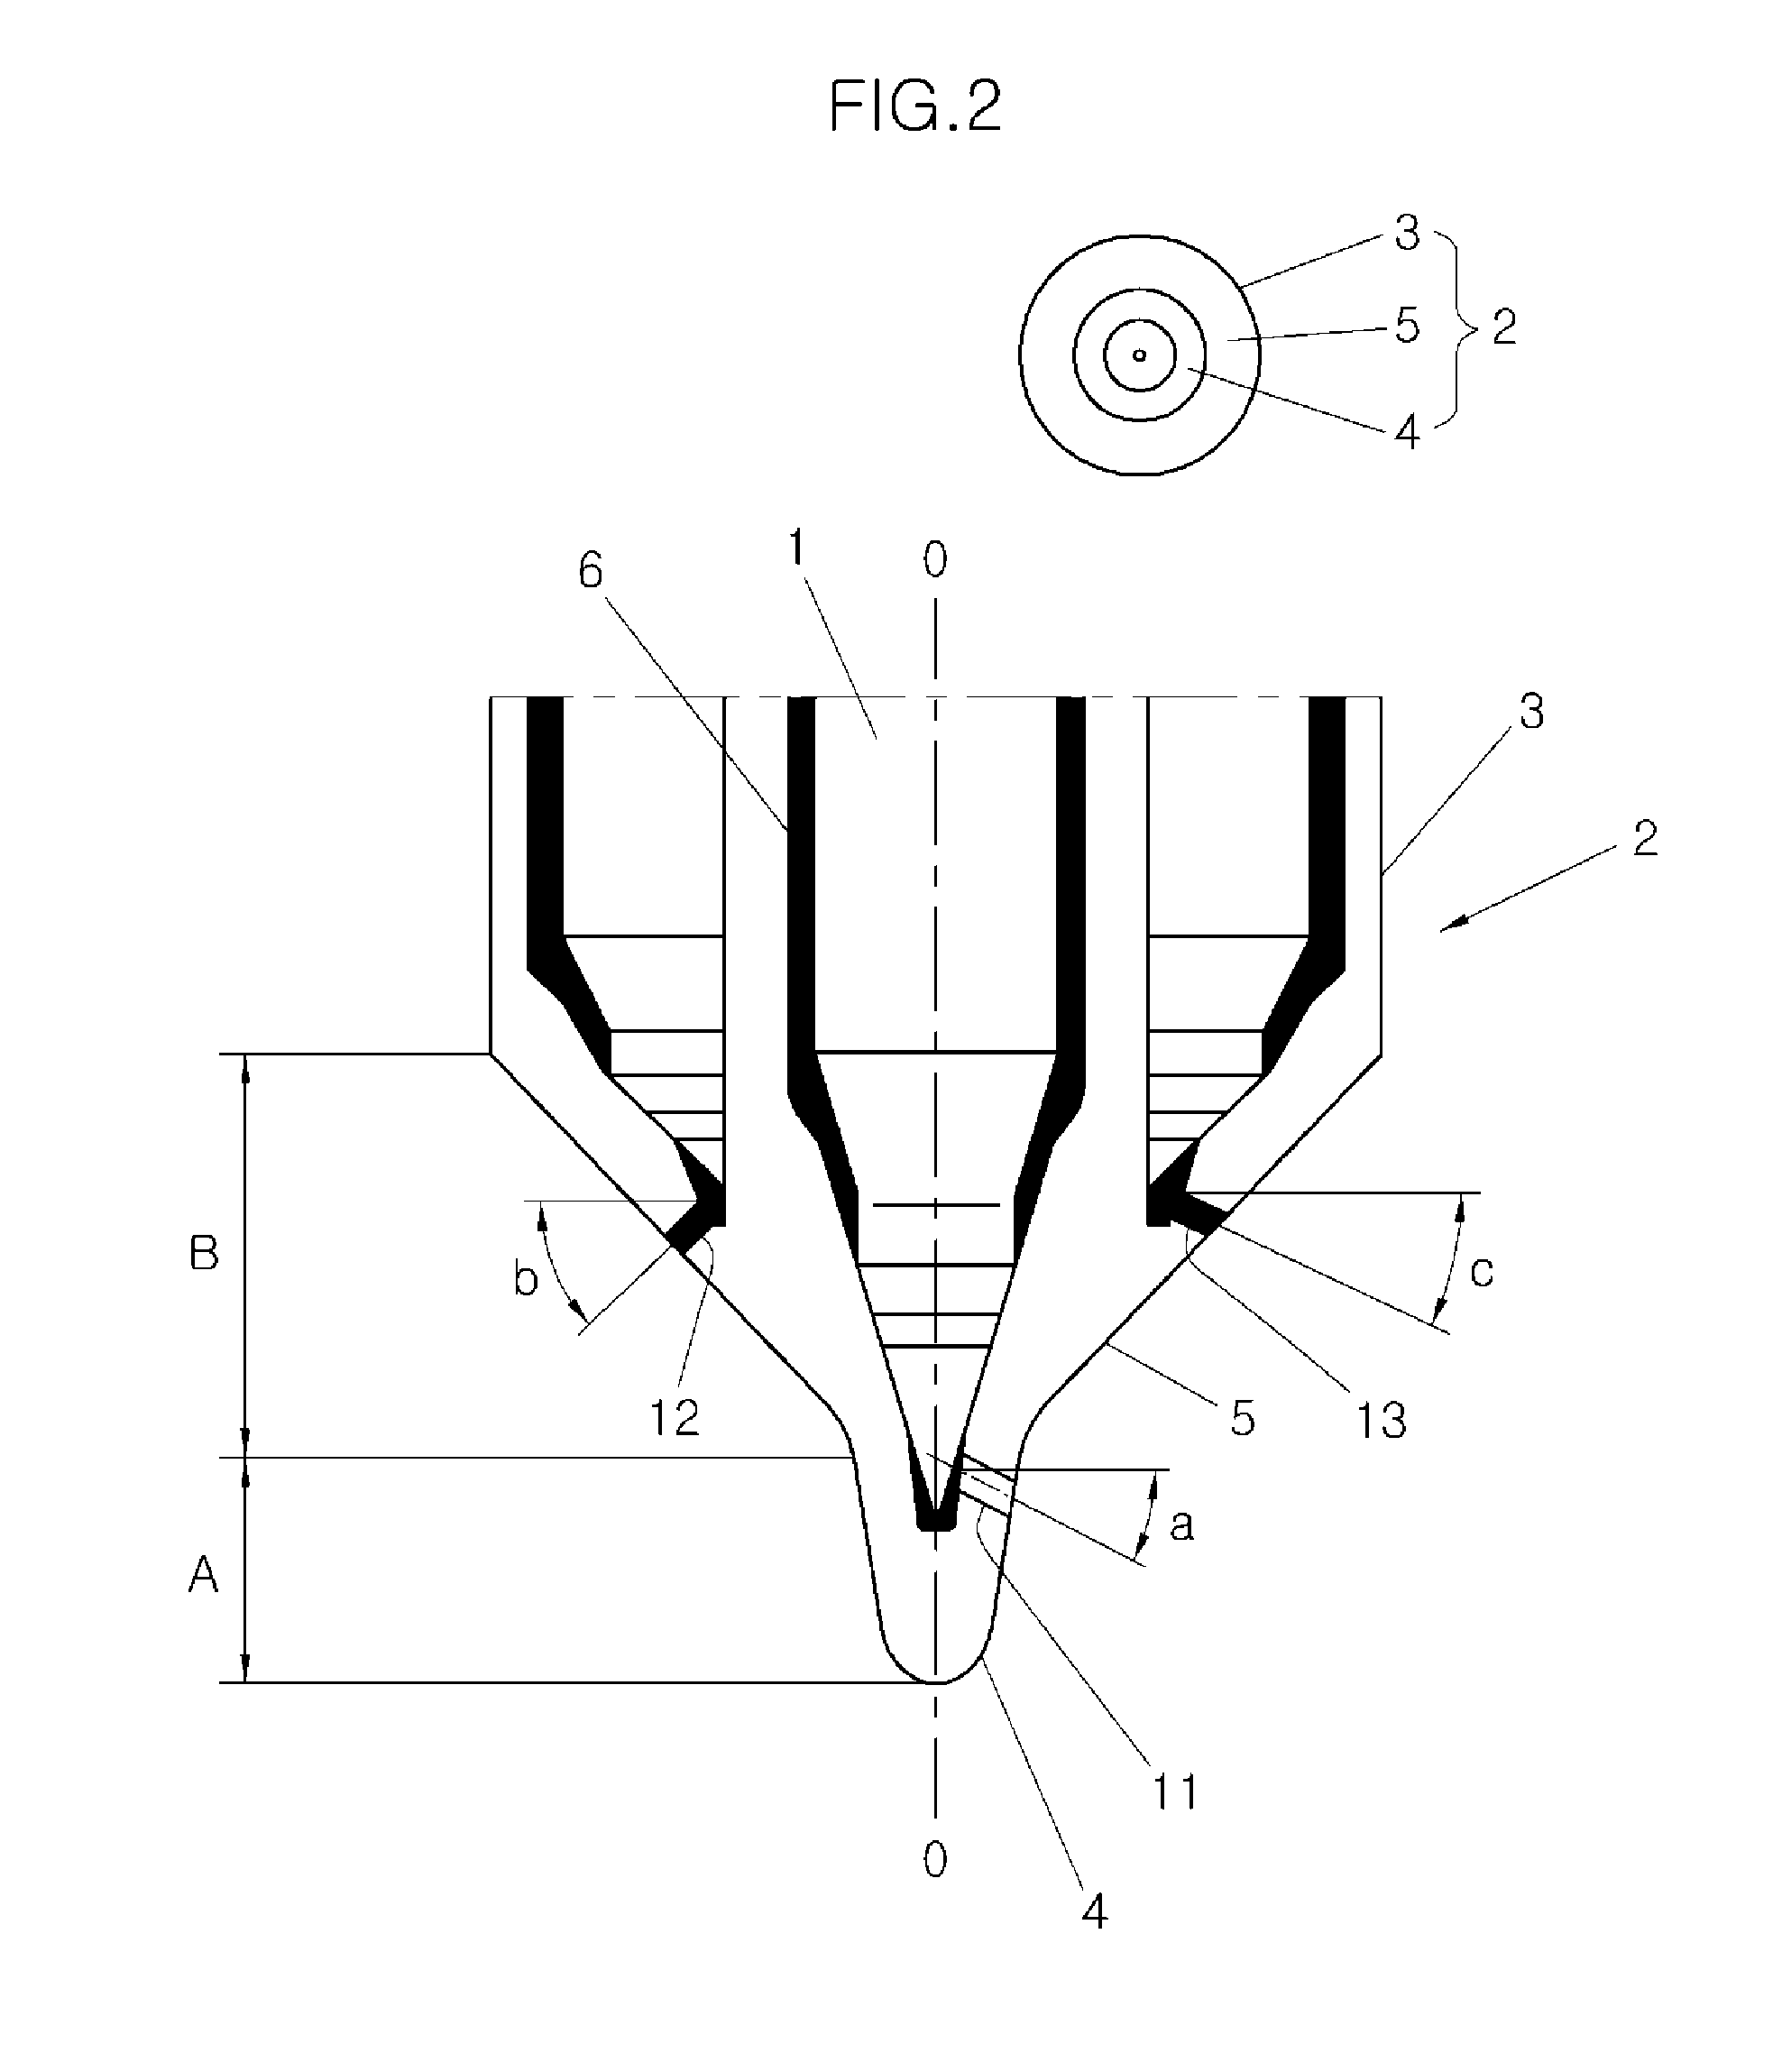 Multi-sac injector